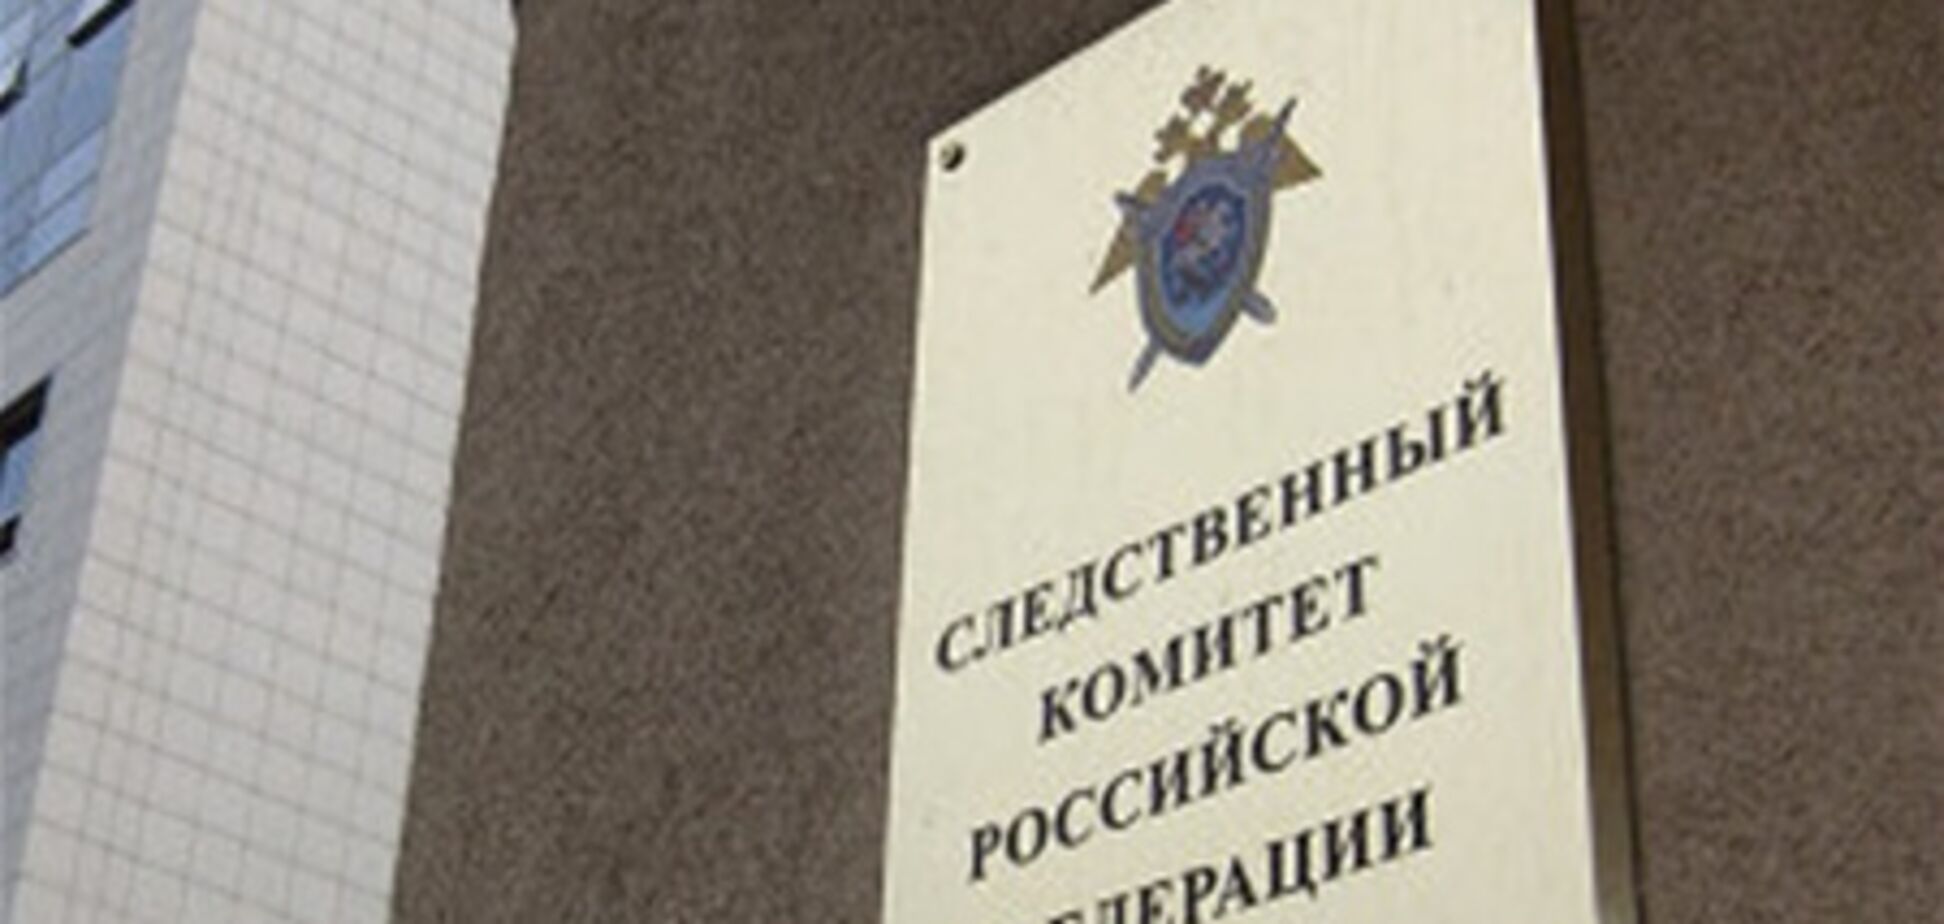 Співробітники СК РФ виїхали до схвильований Пугачов